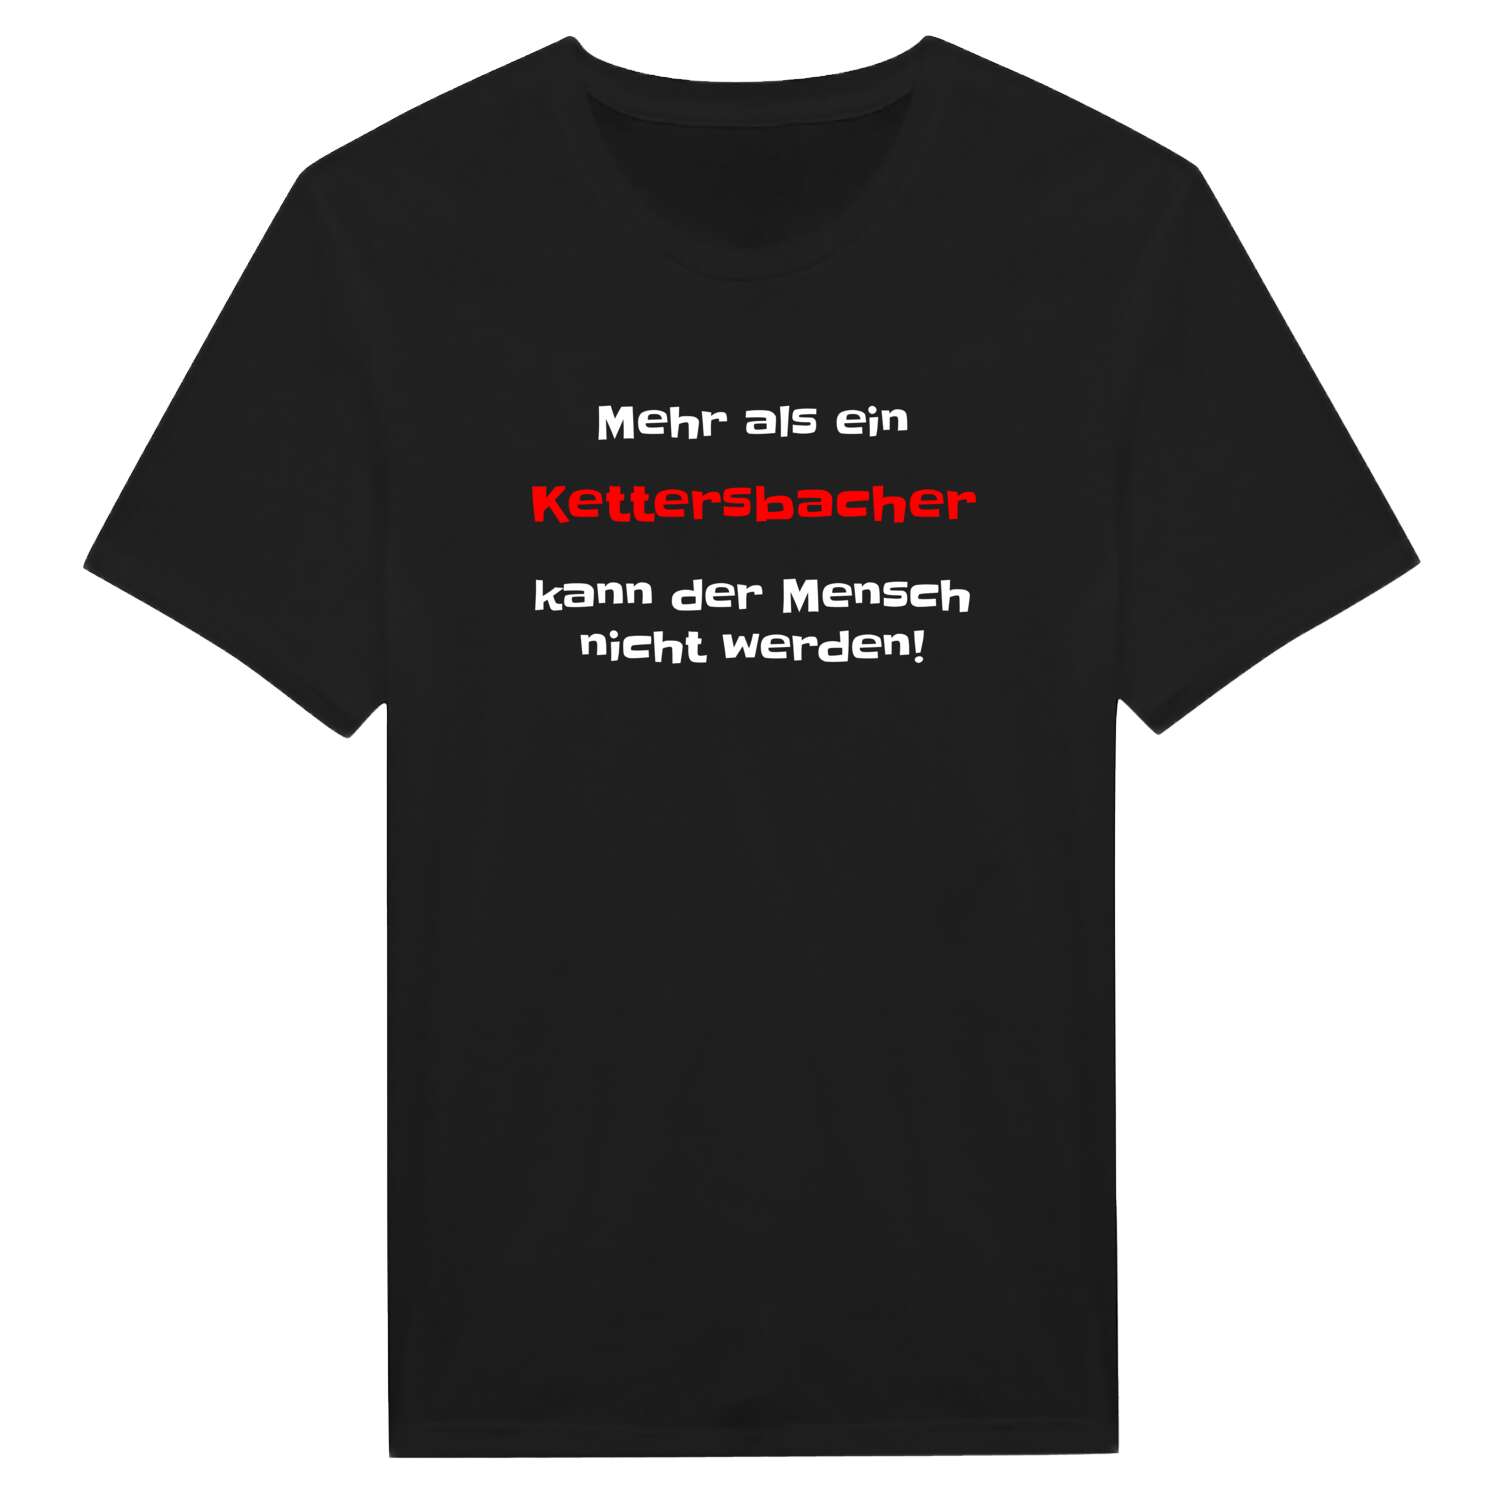 Kettersbach T-Shirt »Mehr als ein«